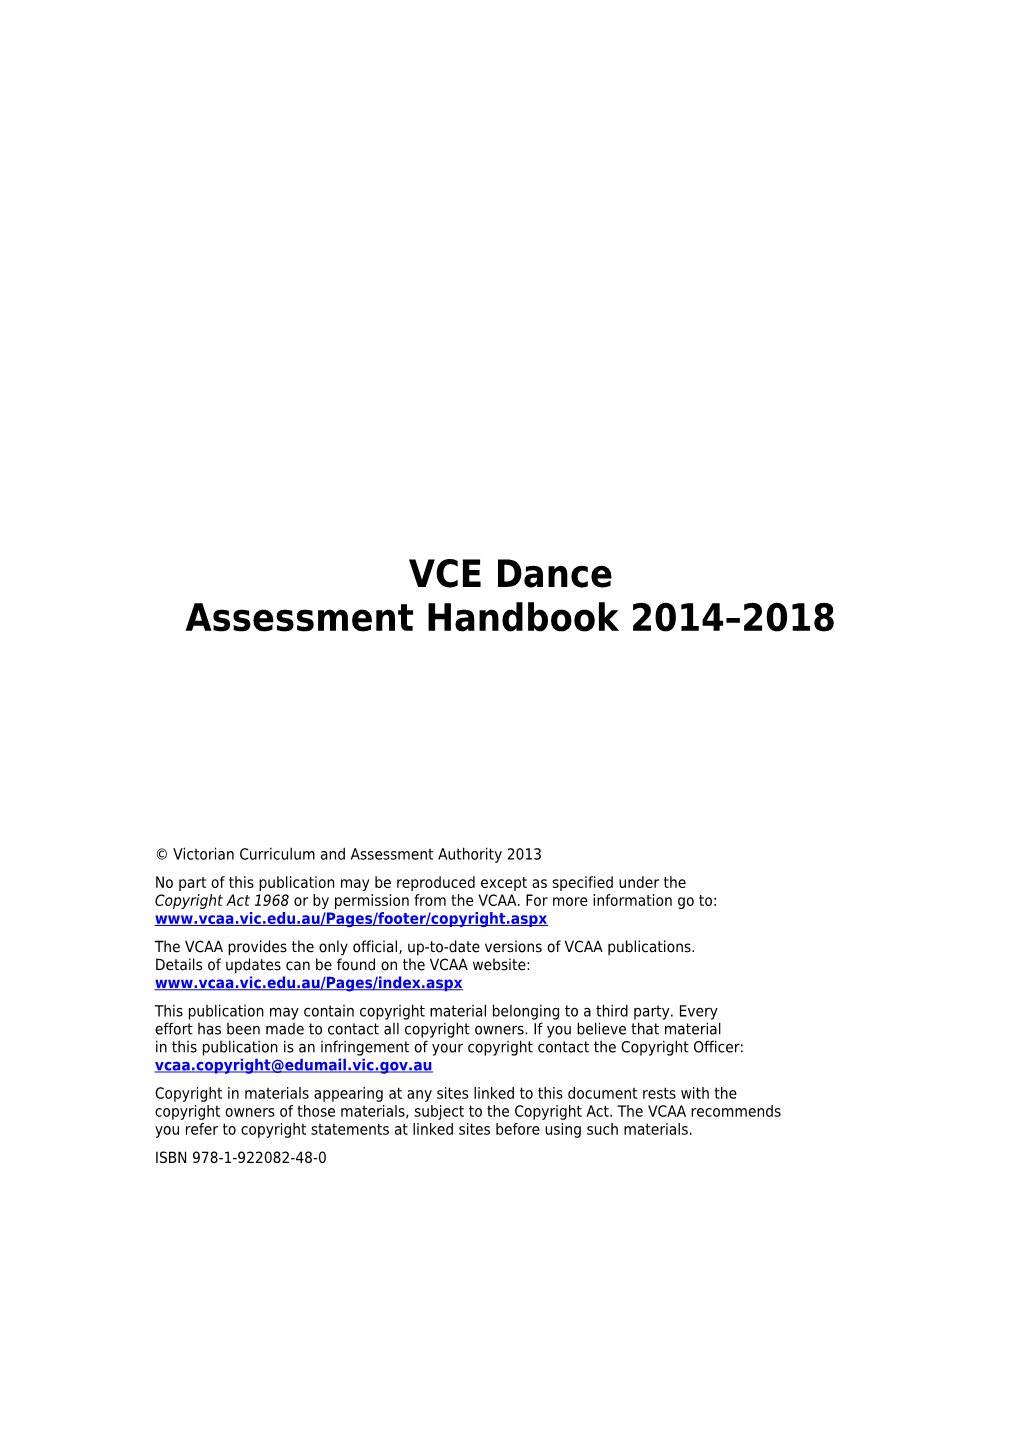 VCE Dance Assessment Handbook 2014-2018